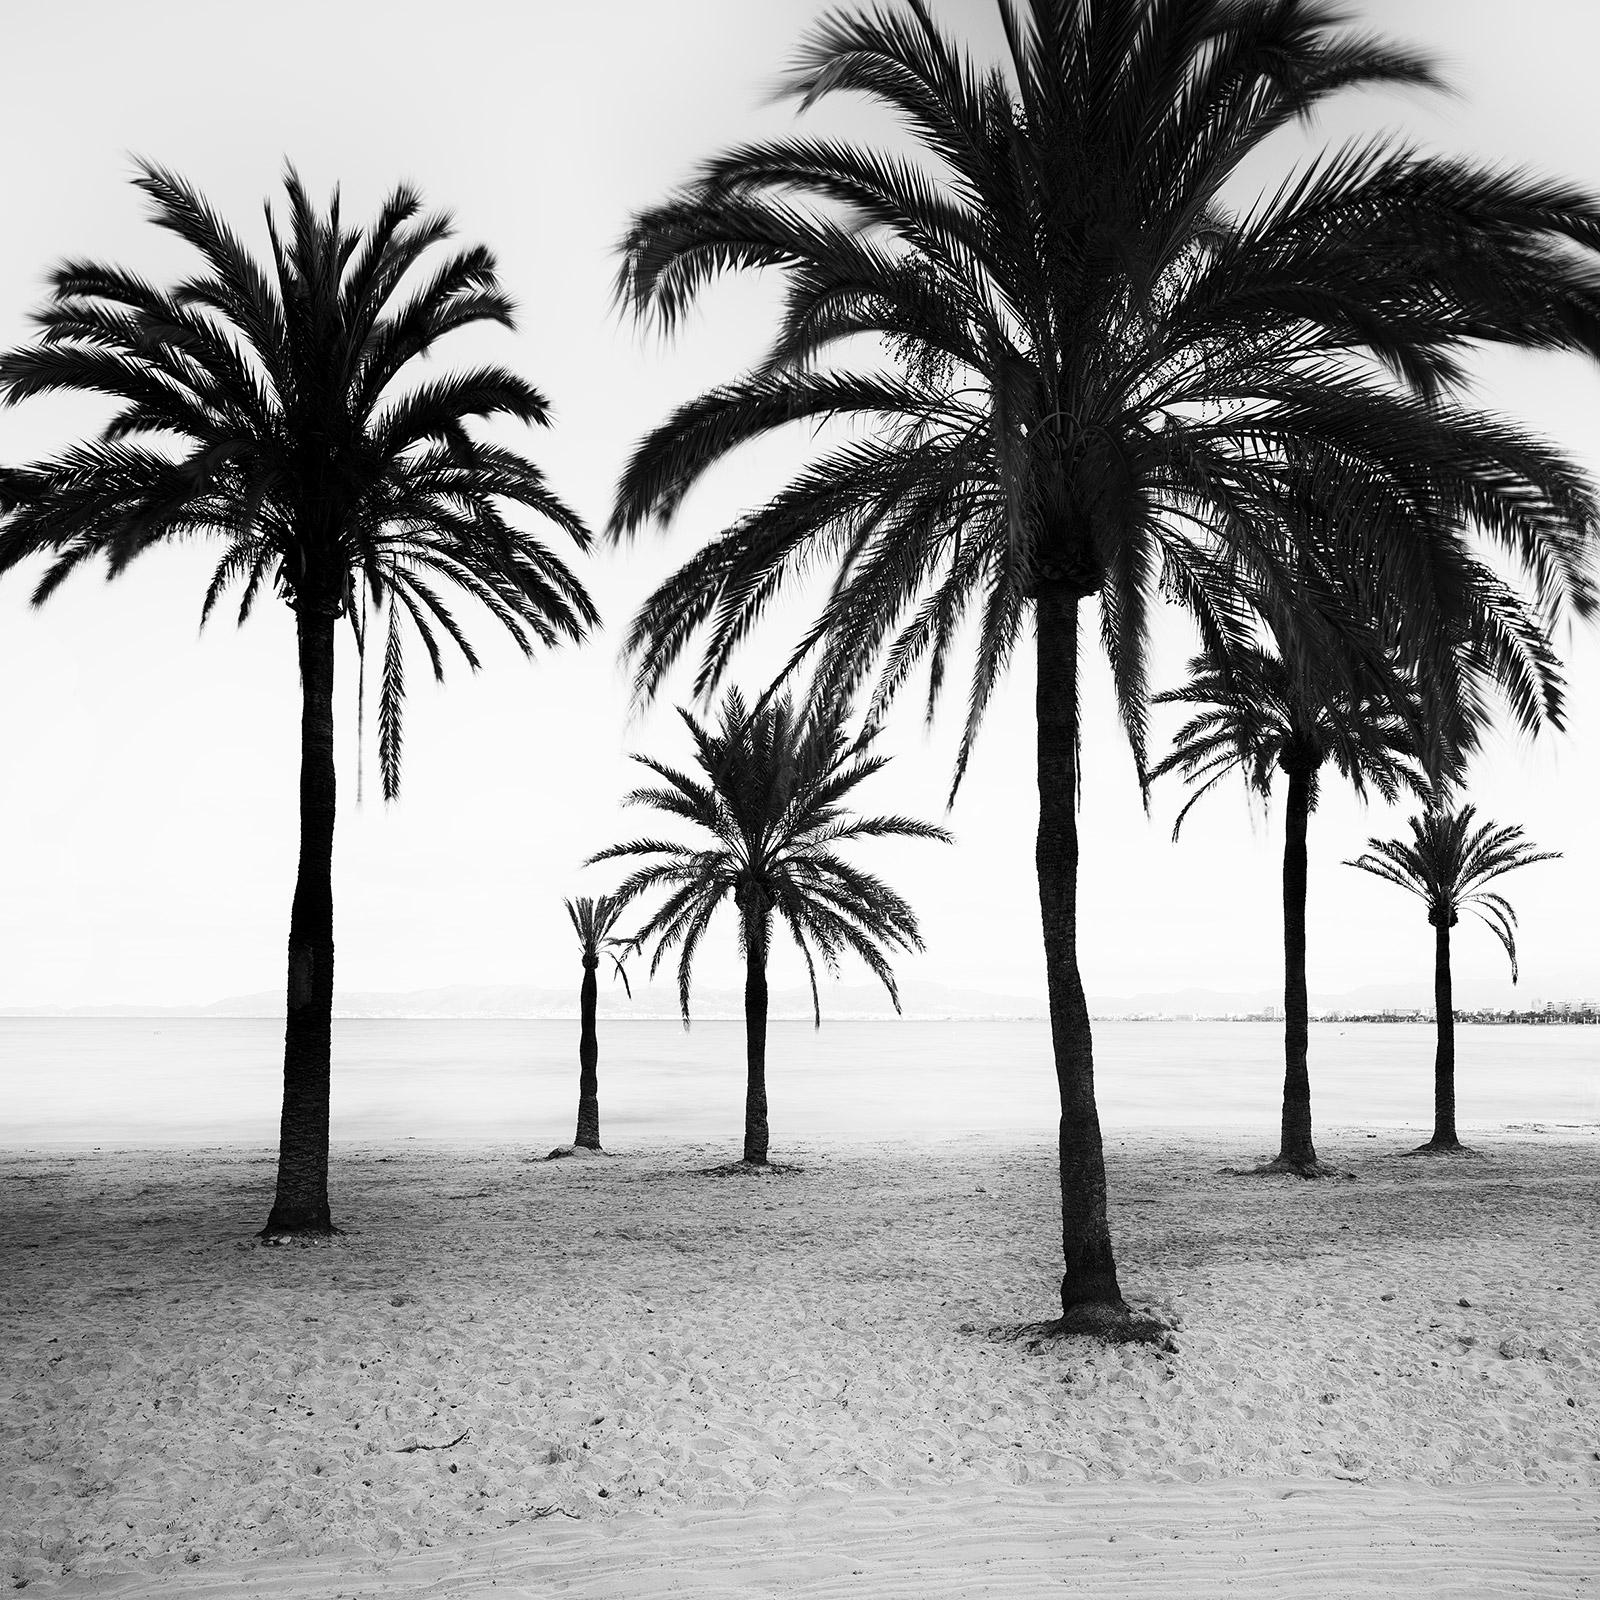 Black and White Photograph Gerald Berghammer - Palmiers à la plage, The Mallorca, photographie noir et blanc, art paysage